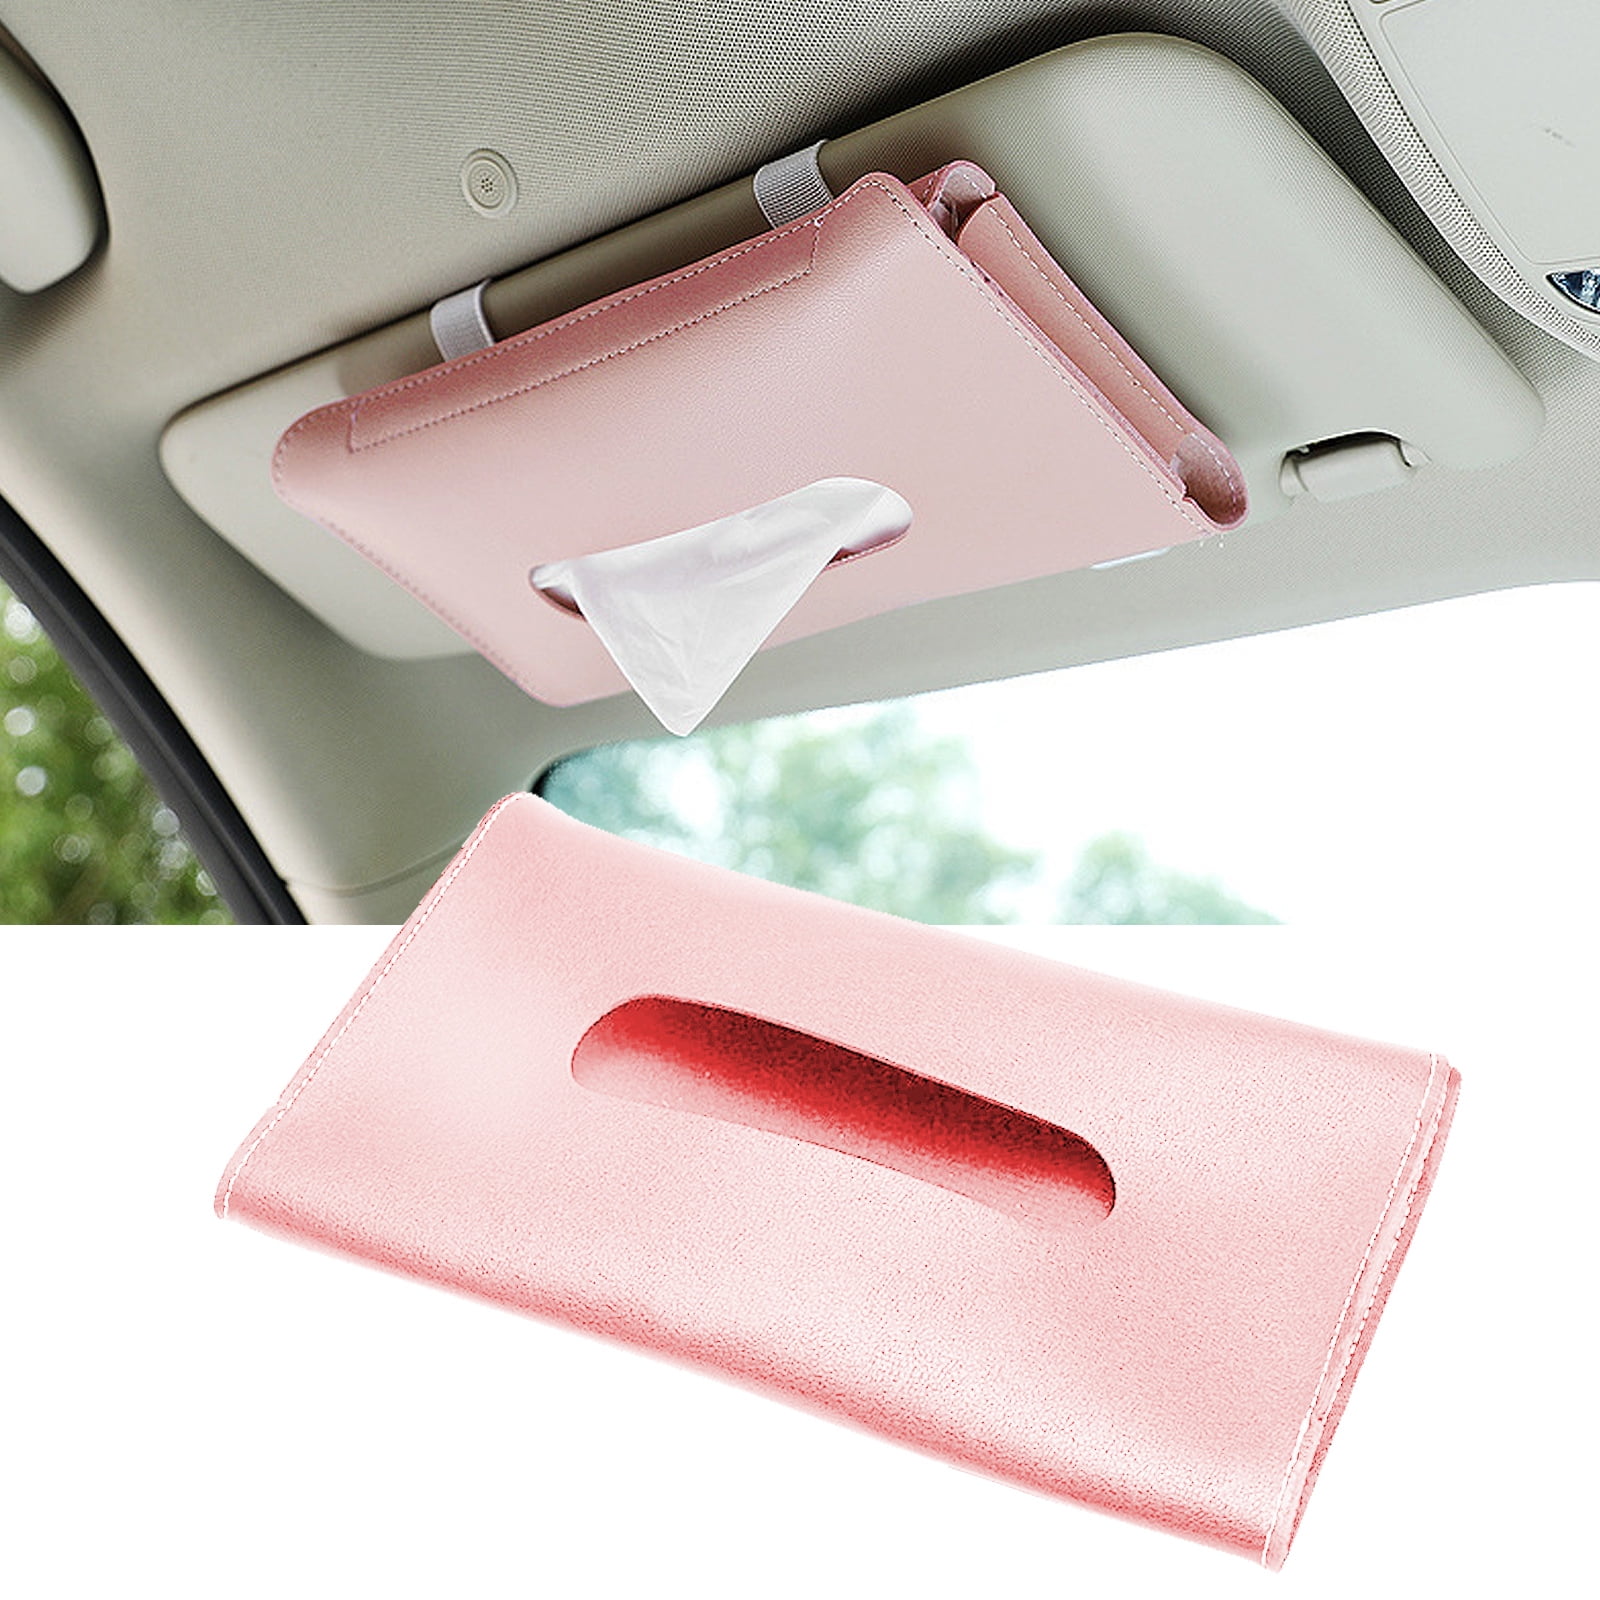 Visor Napkin Holder Multi Creative Car Tissue Box Holder